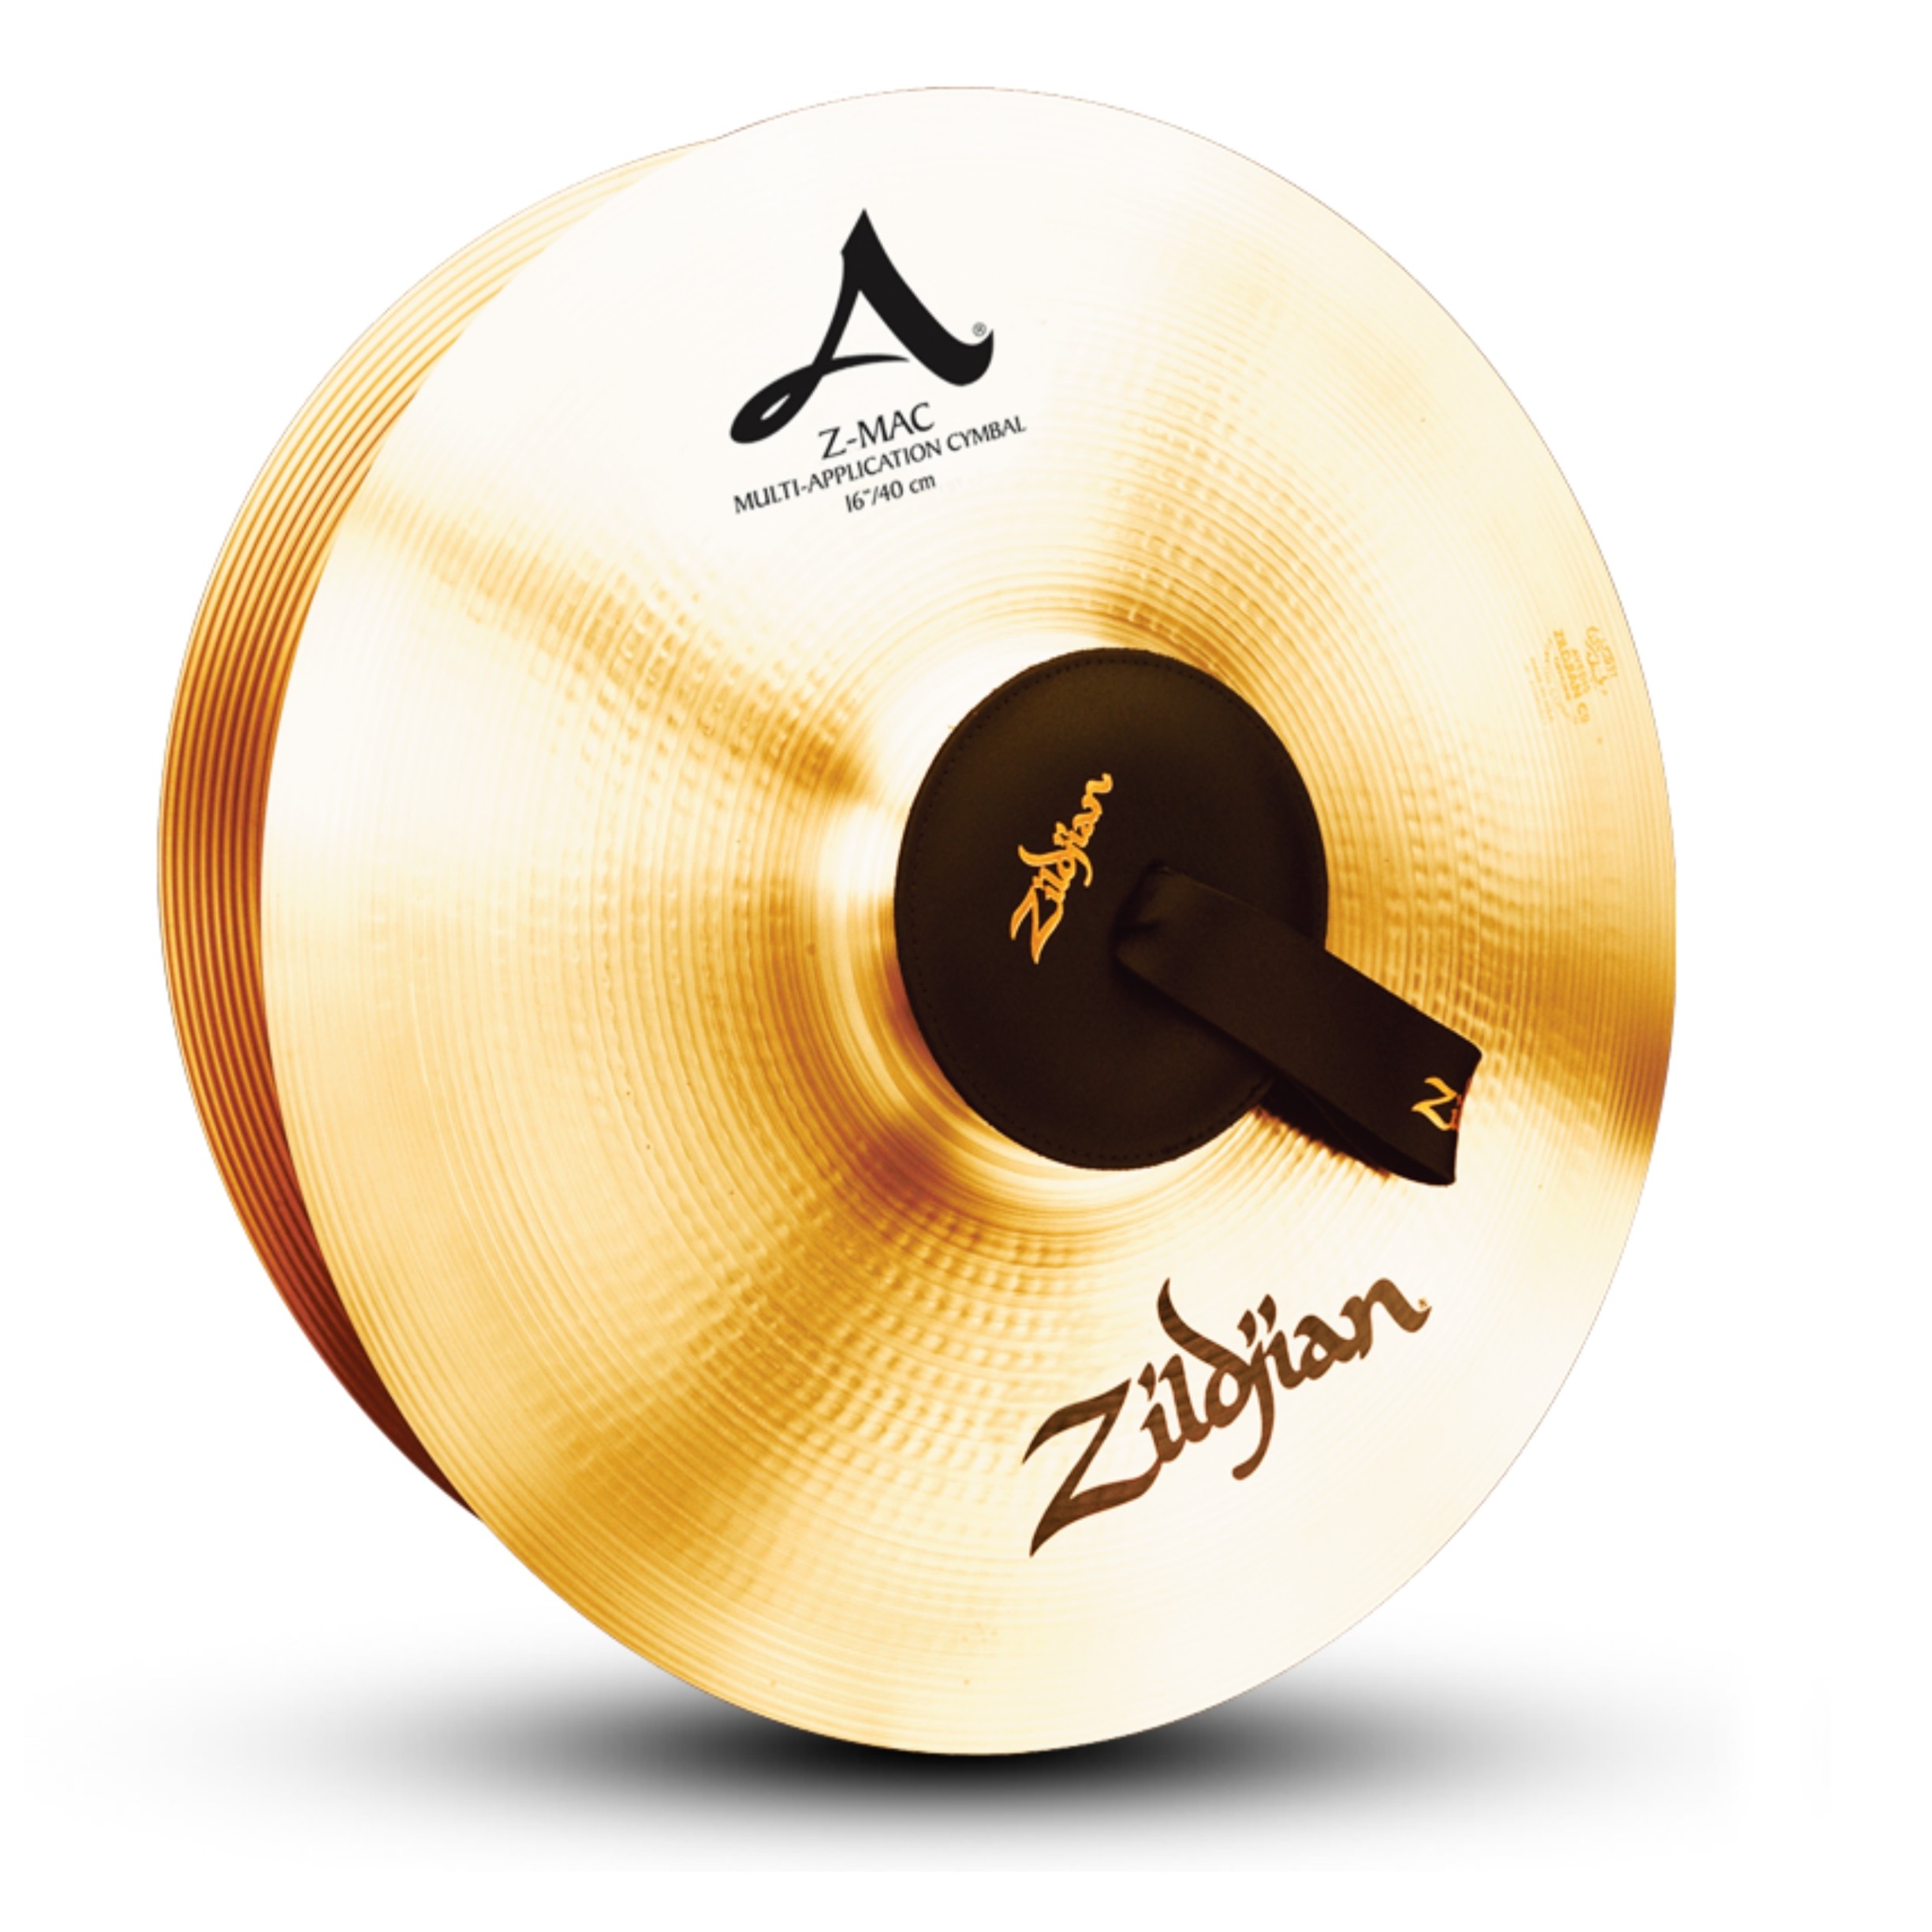 Zildjian 16" Z-MAC Cymbals